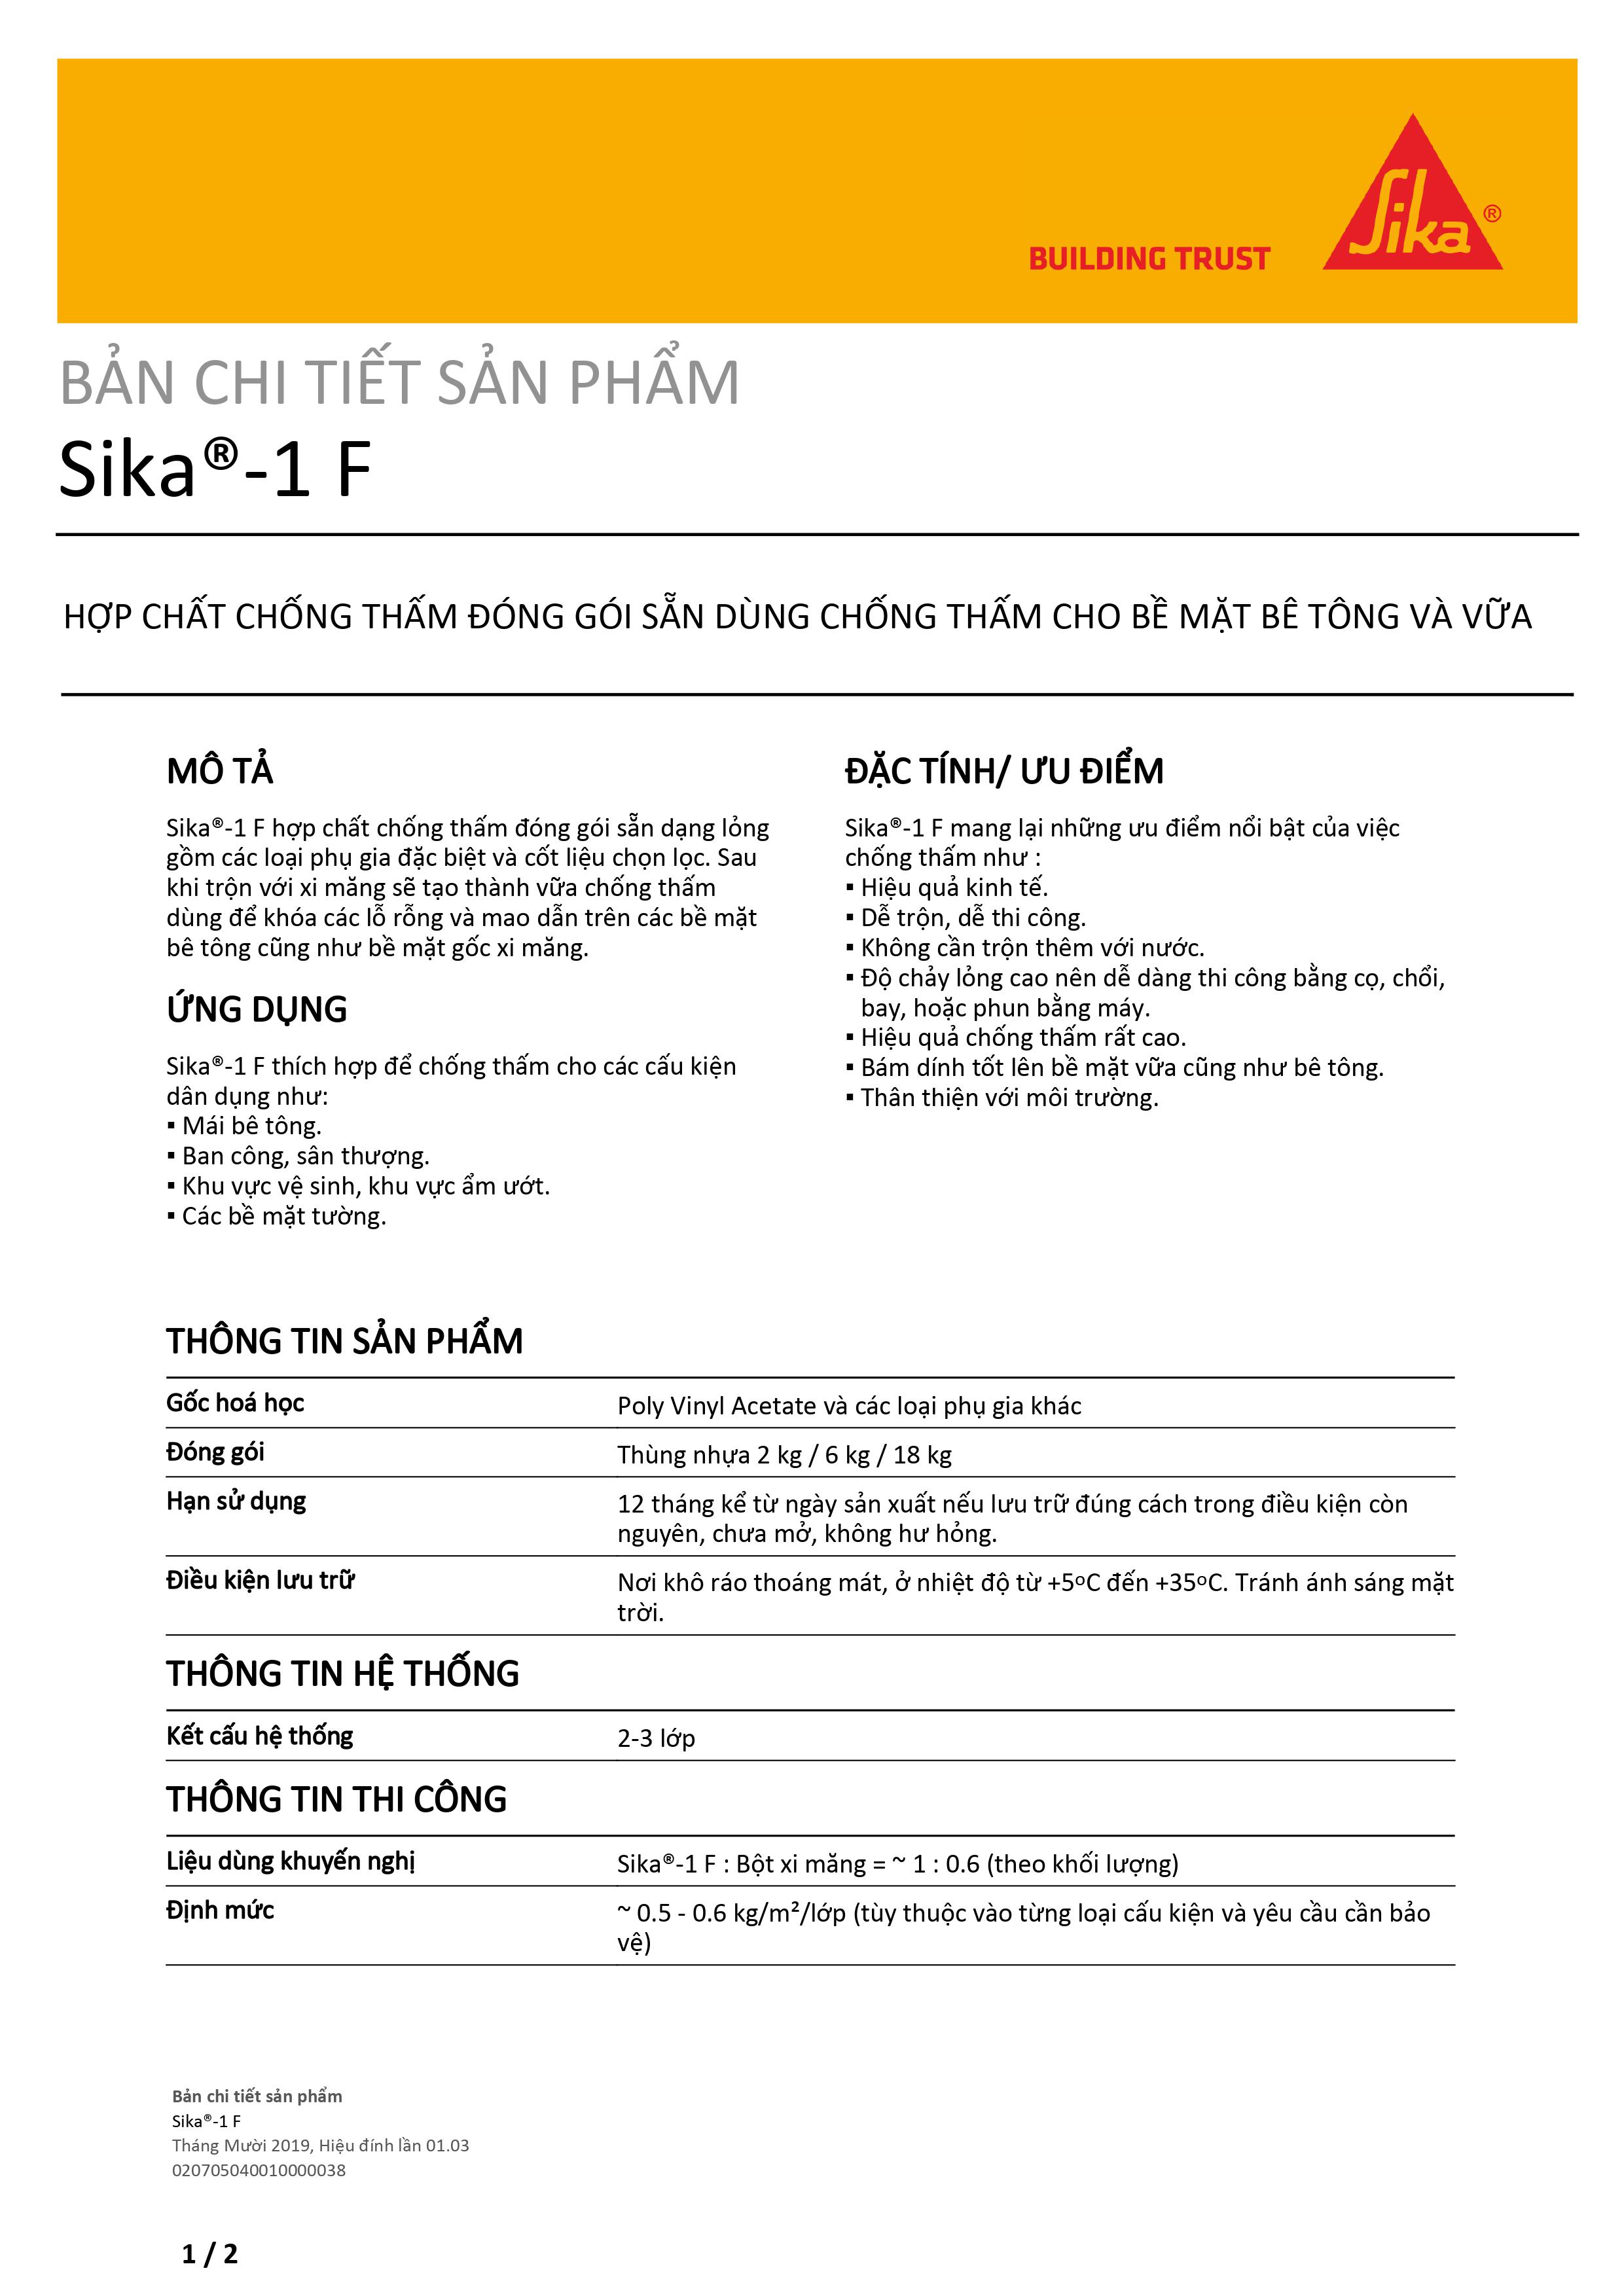 Sika 1F – Chống thấm mái, sân thượng, nhà vệ sinh, seno – 18kg